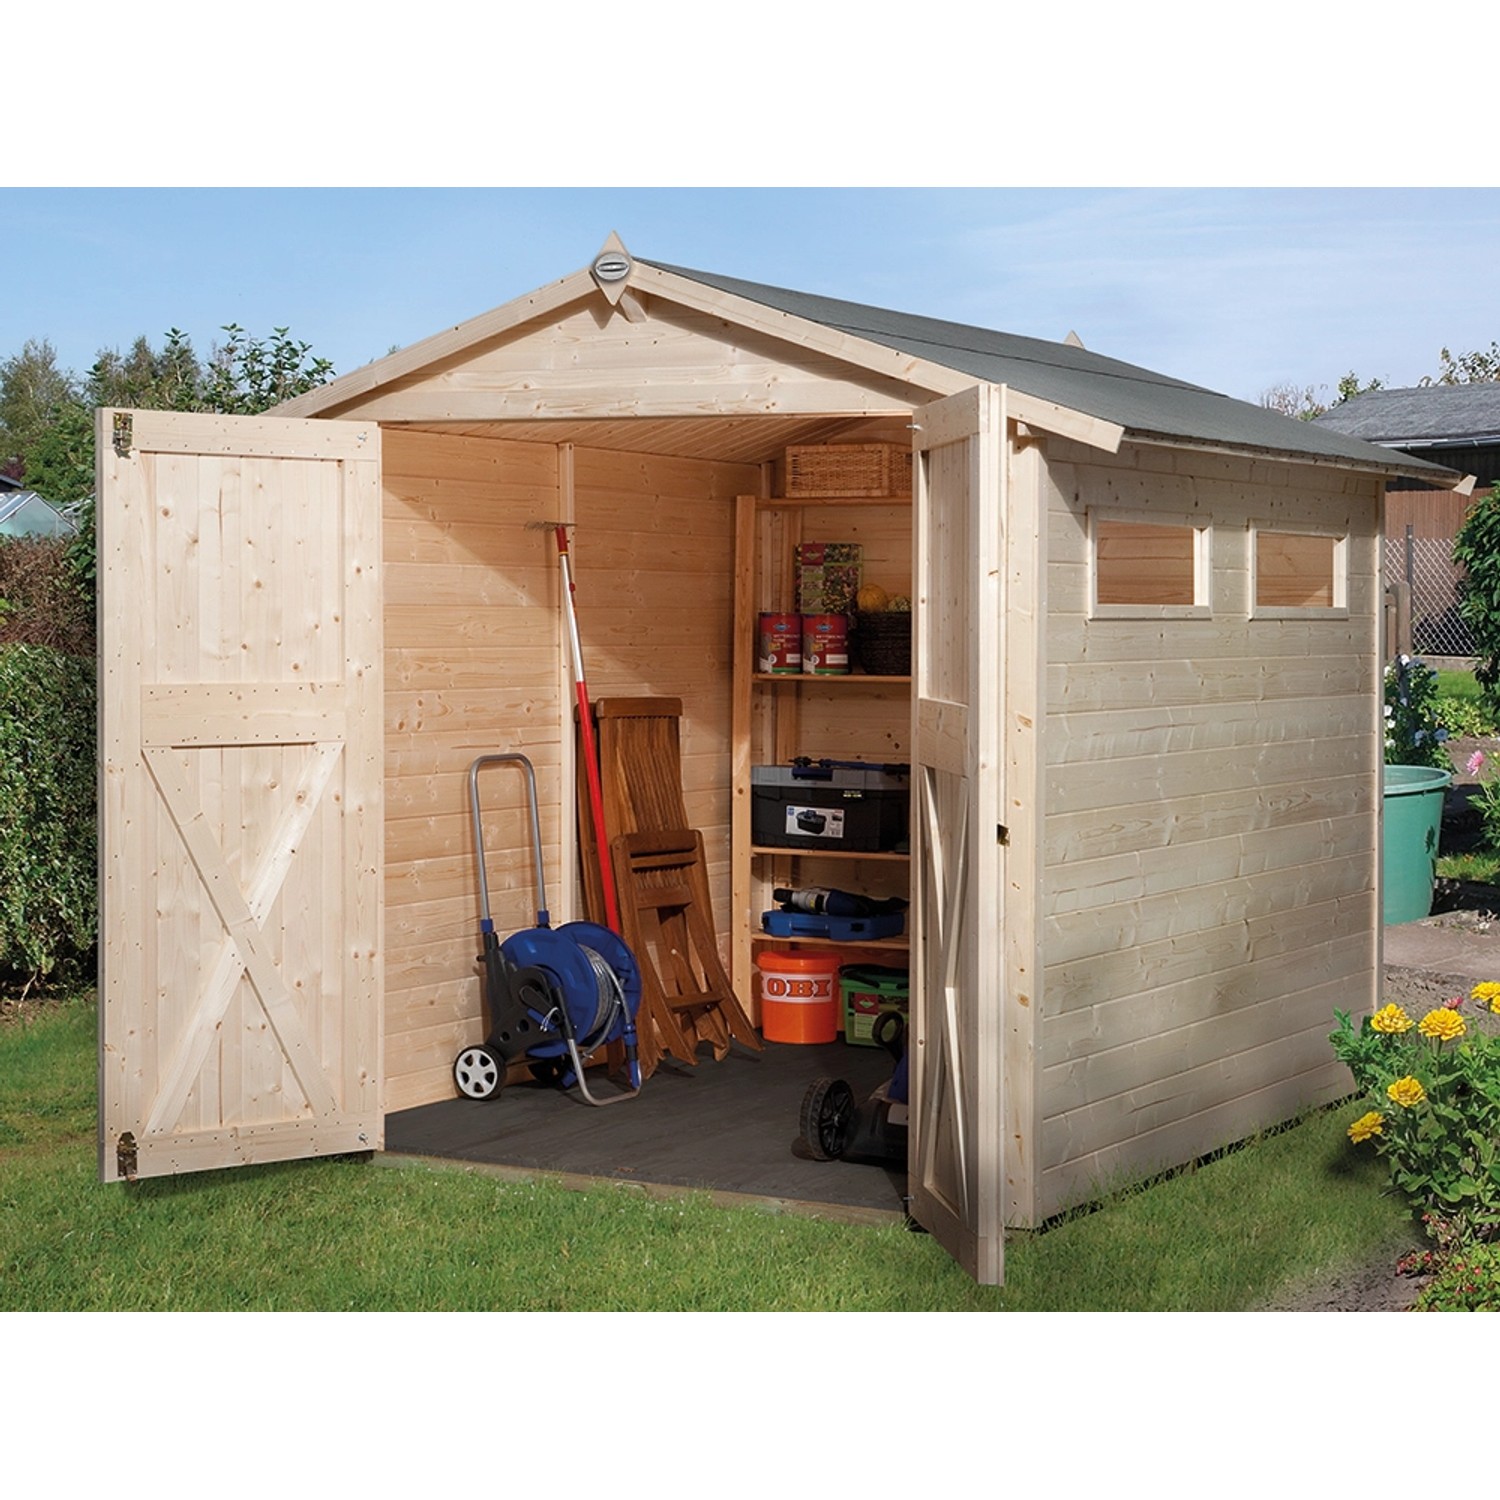 OBI Outdoor Living Holz-Gartenhaus/Gerätehaus Kompakt Satteldach 198 cm x 217 cm von OBI Outdoor Living